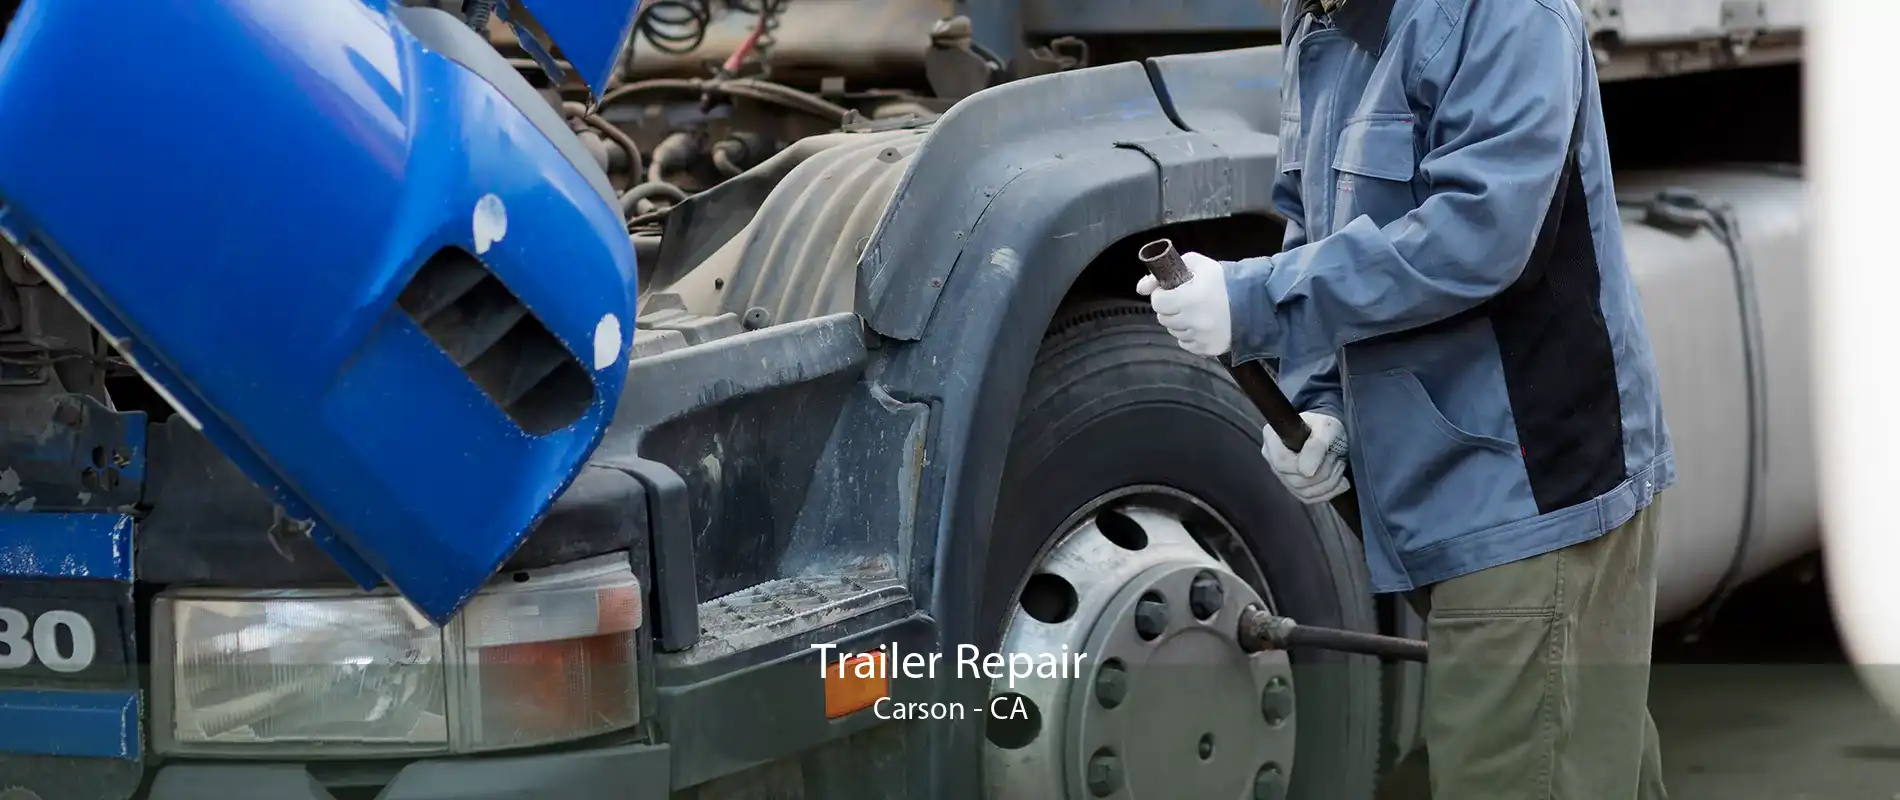 Trailer Repair Carson - CA